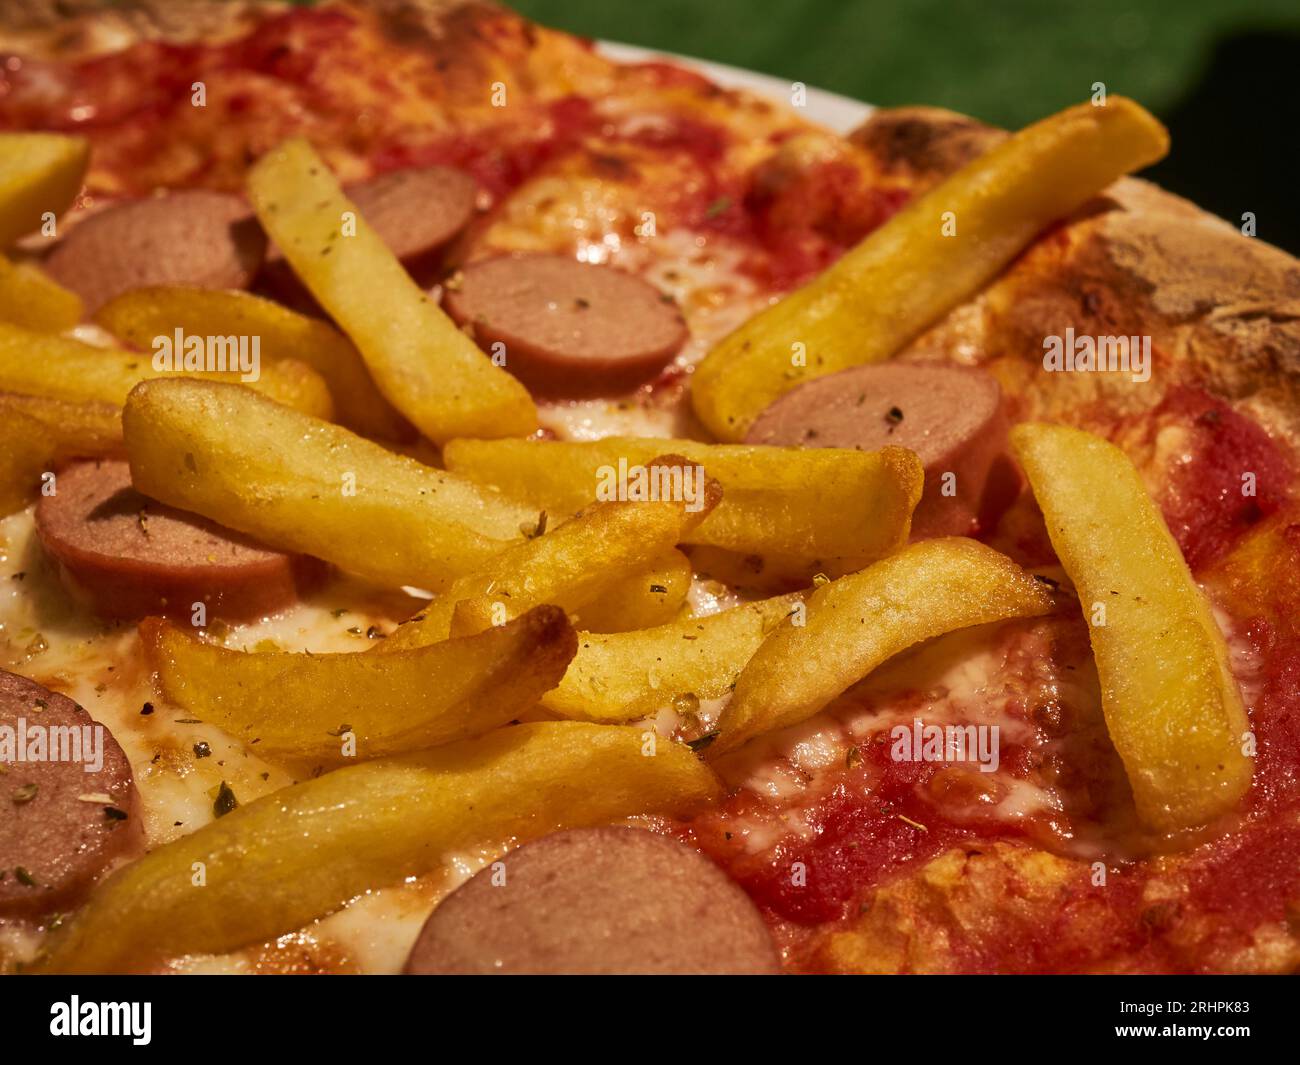 Una pizza condita con patatine fritte e fette di hot dog, chiamata umoristicamente "pizza americana", servita a Cuneo, Piemonte, Italia Foto Stock